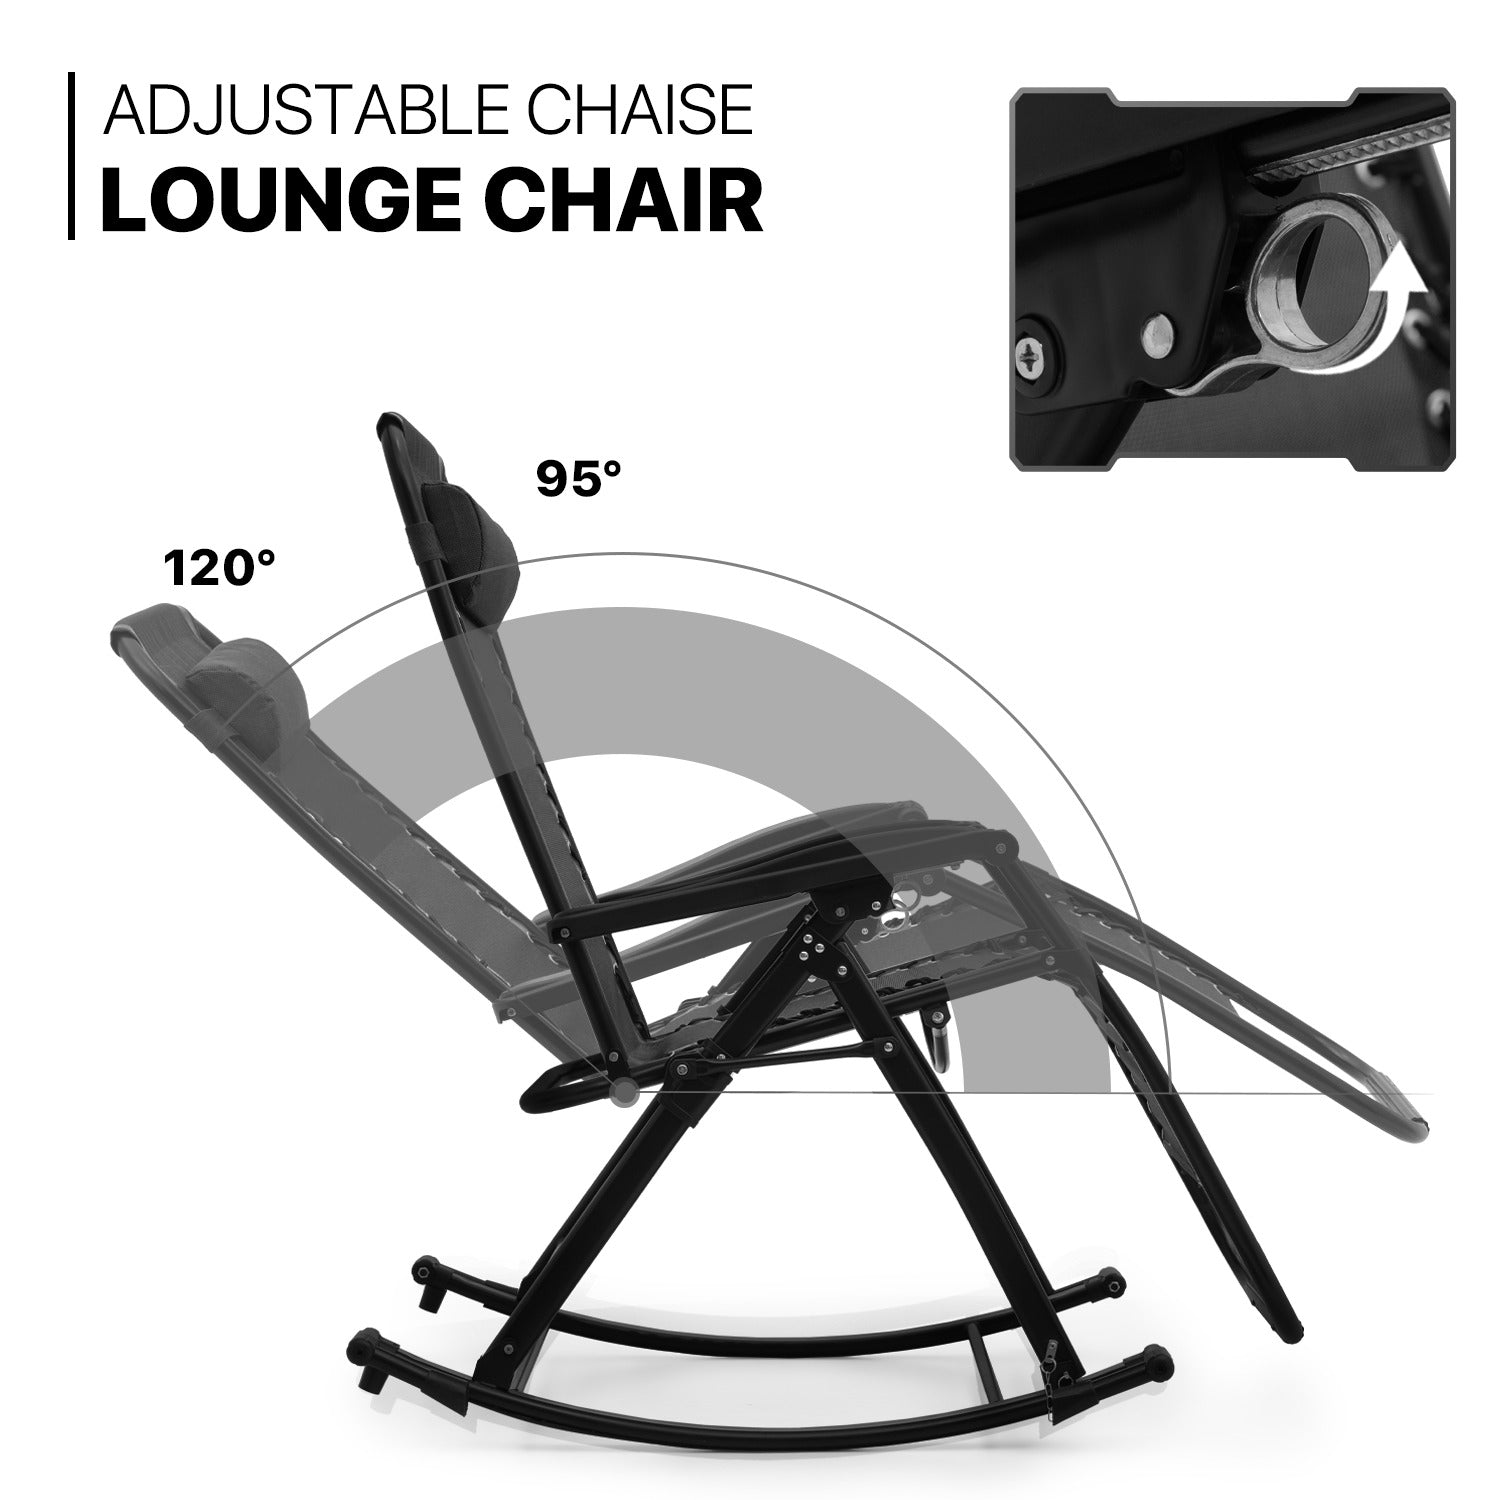 2 Pack Rocking Zero Gravity Chair